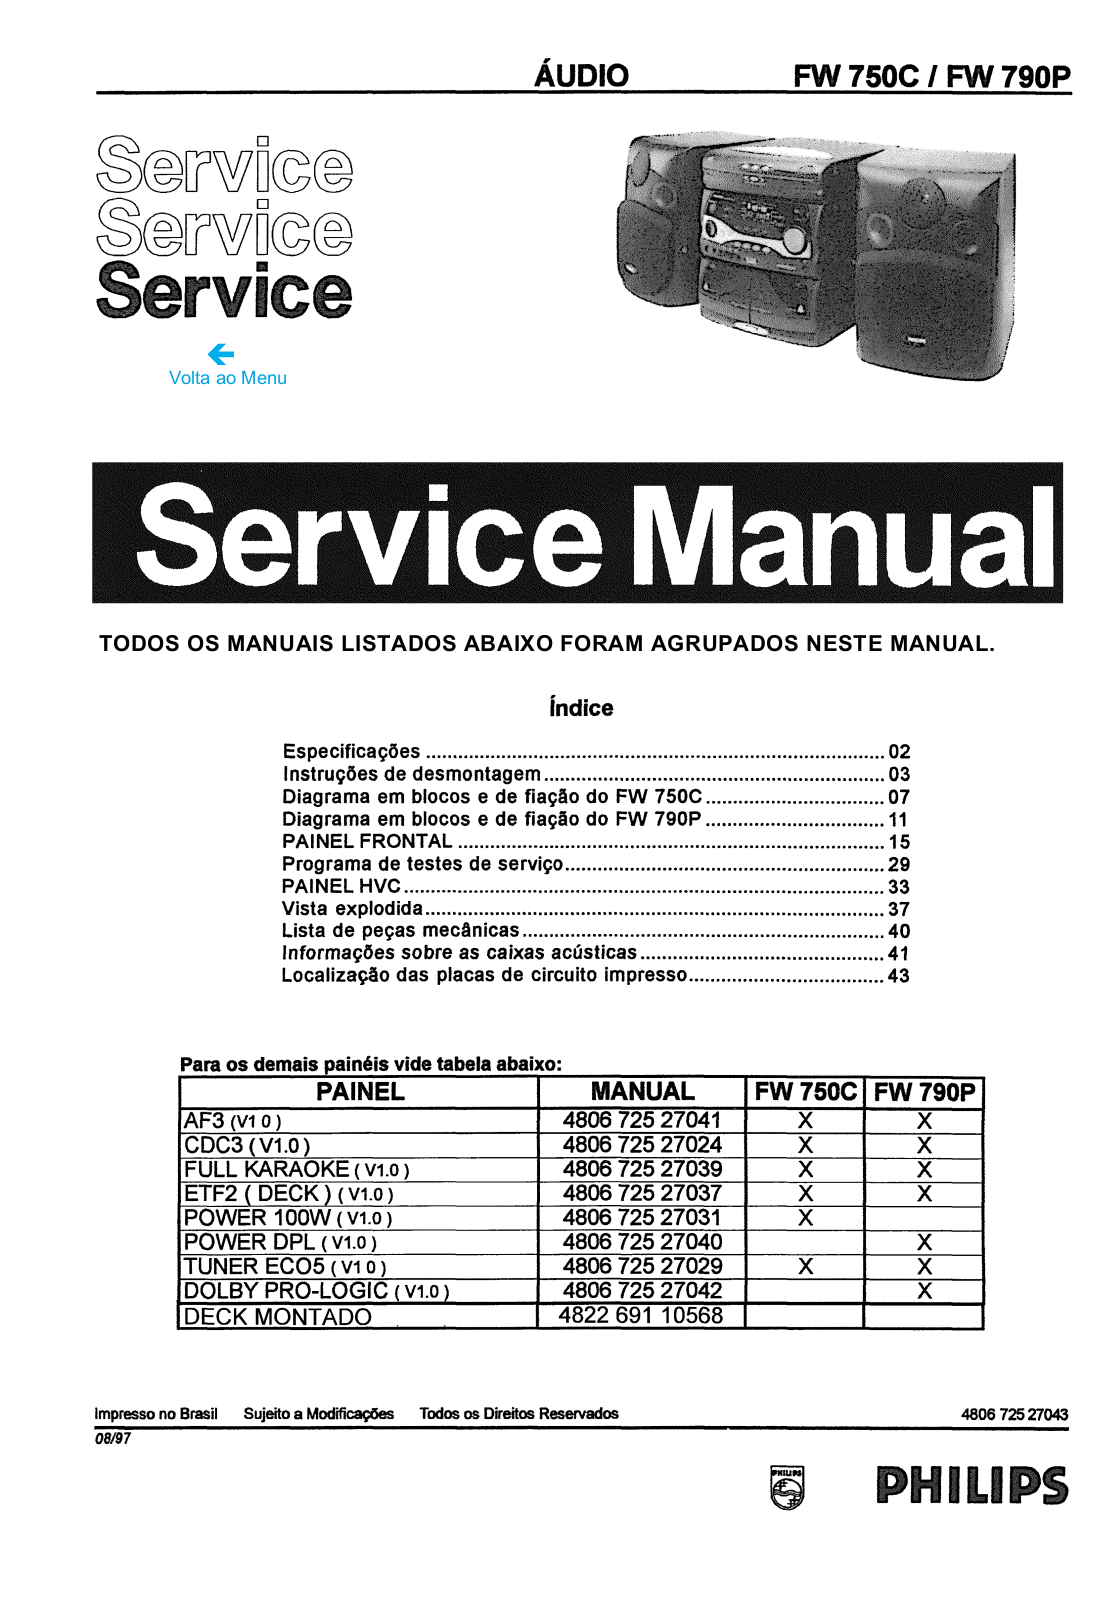 Philips FW 750C 790P Service Manual